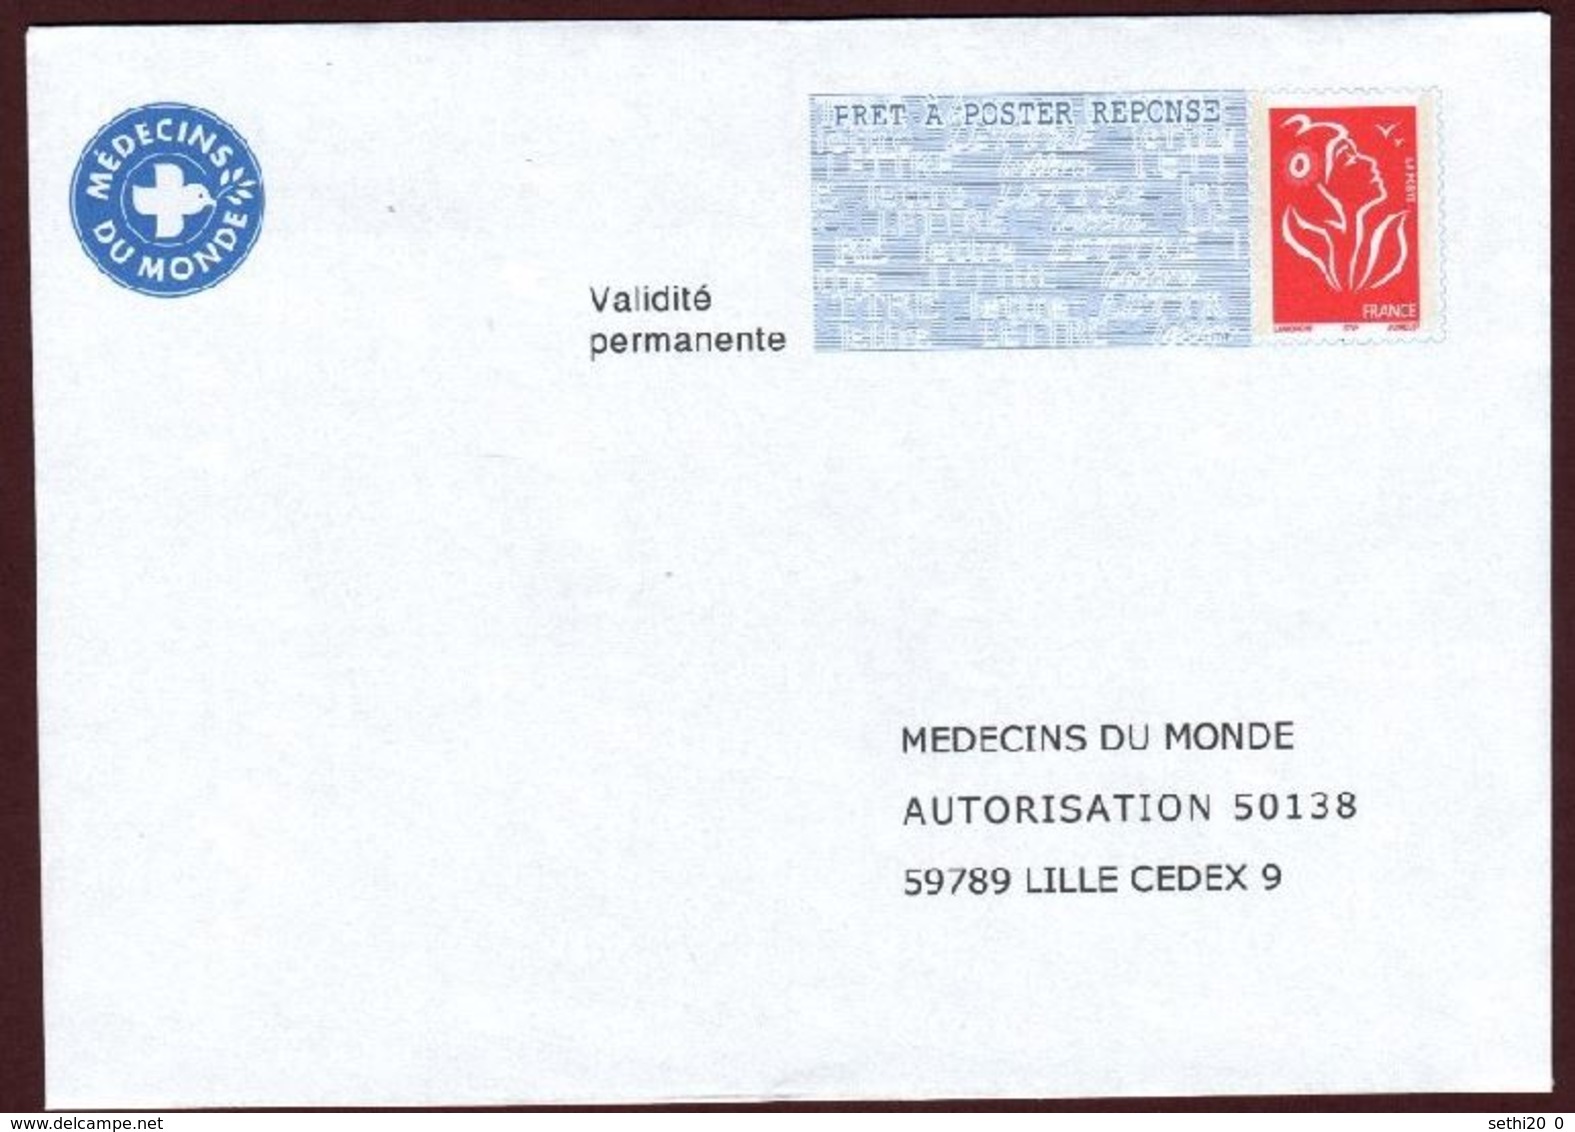 France PAP Réponse  Lamouche  0509632 MEDECINS DU MONDE - Prêts-à-poster: Réponse /Luquet